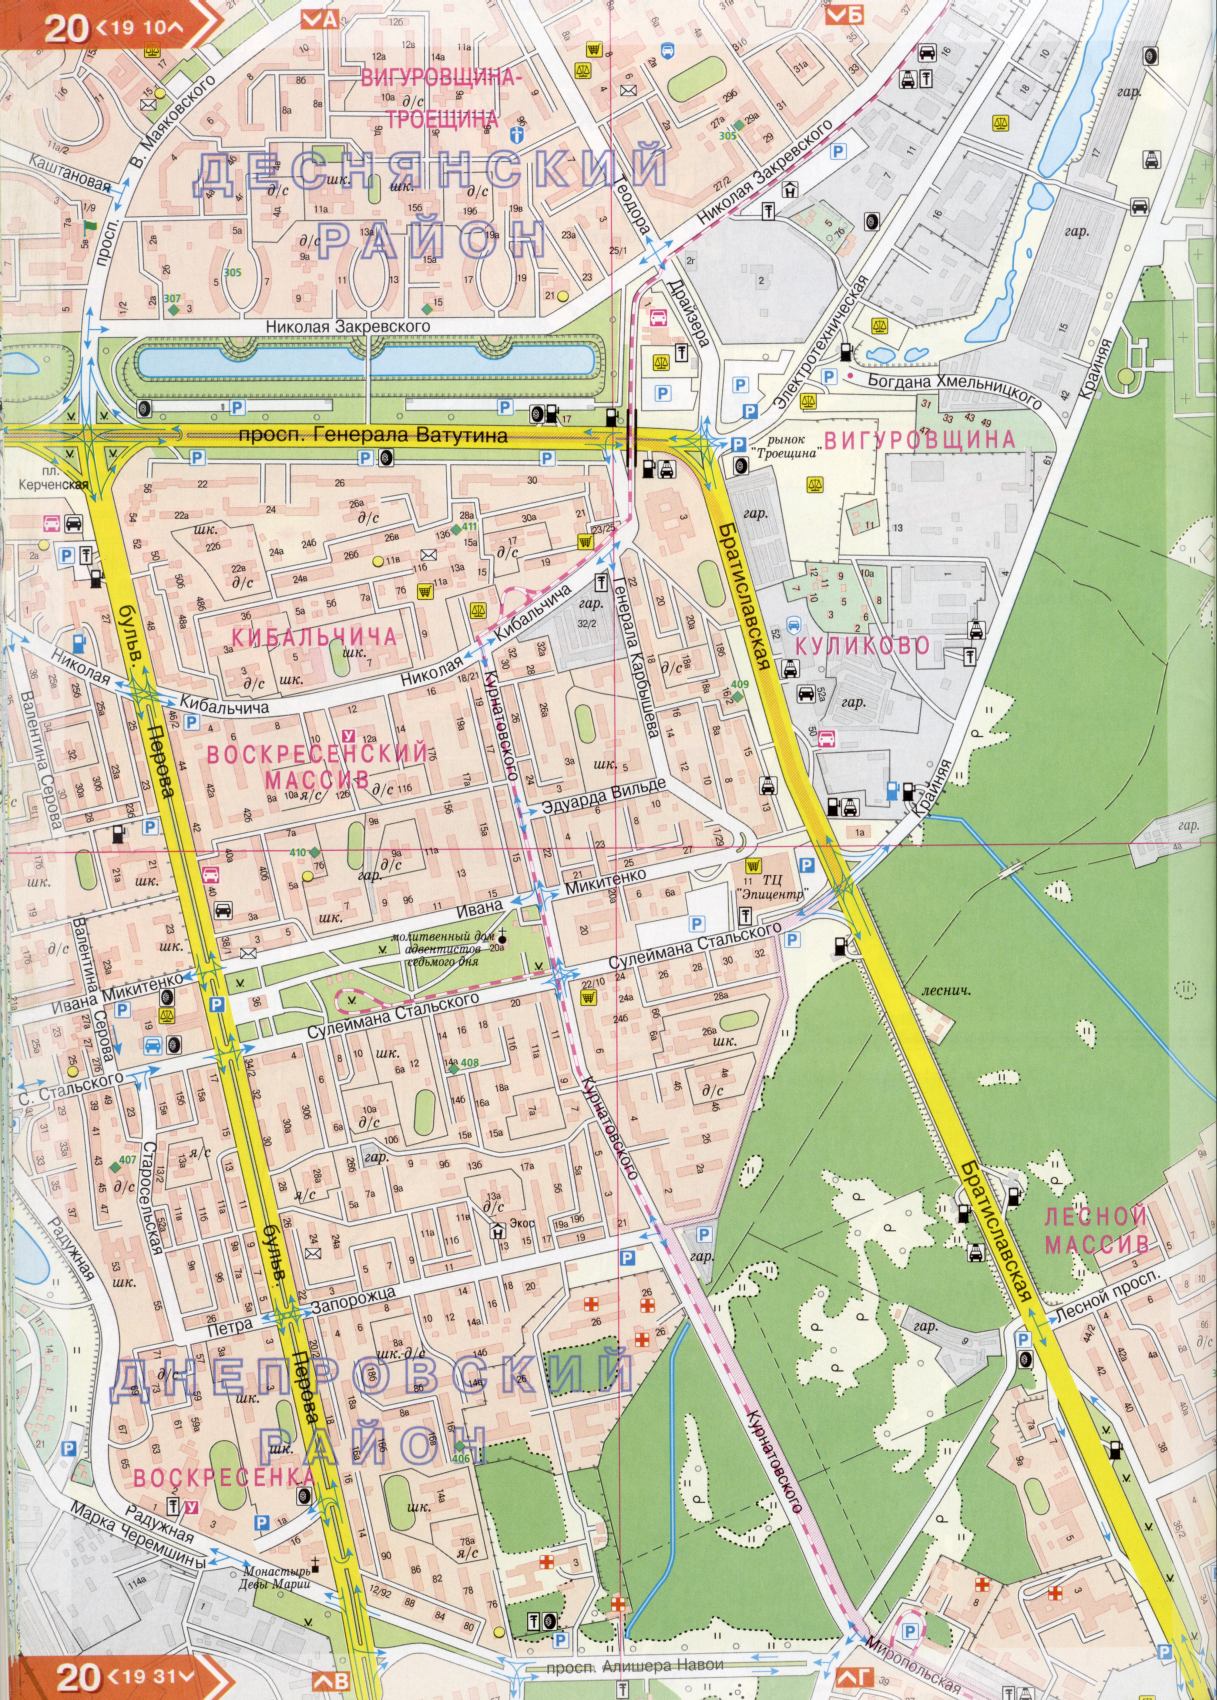 Kiew Karte Details 1cm = 150m für 45 Blatt. Karte von Kiew aus dem Atlas von Autobahnen. Laden Sie eine detaillierte Karte, H1